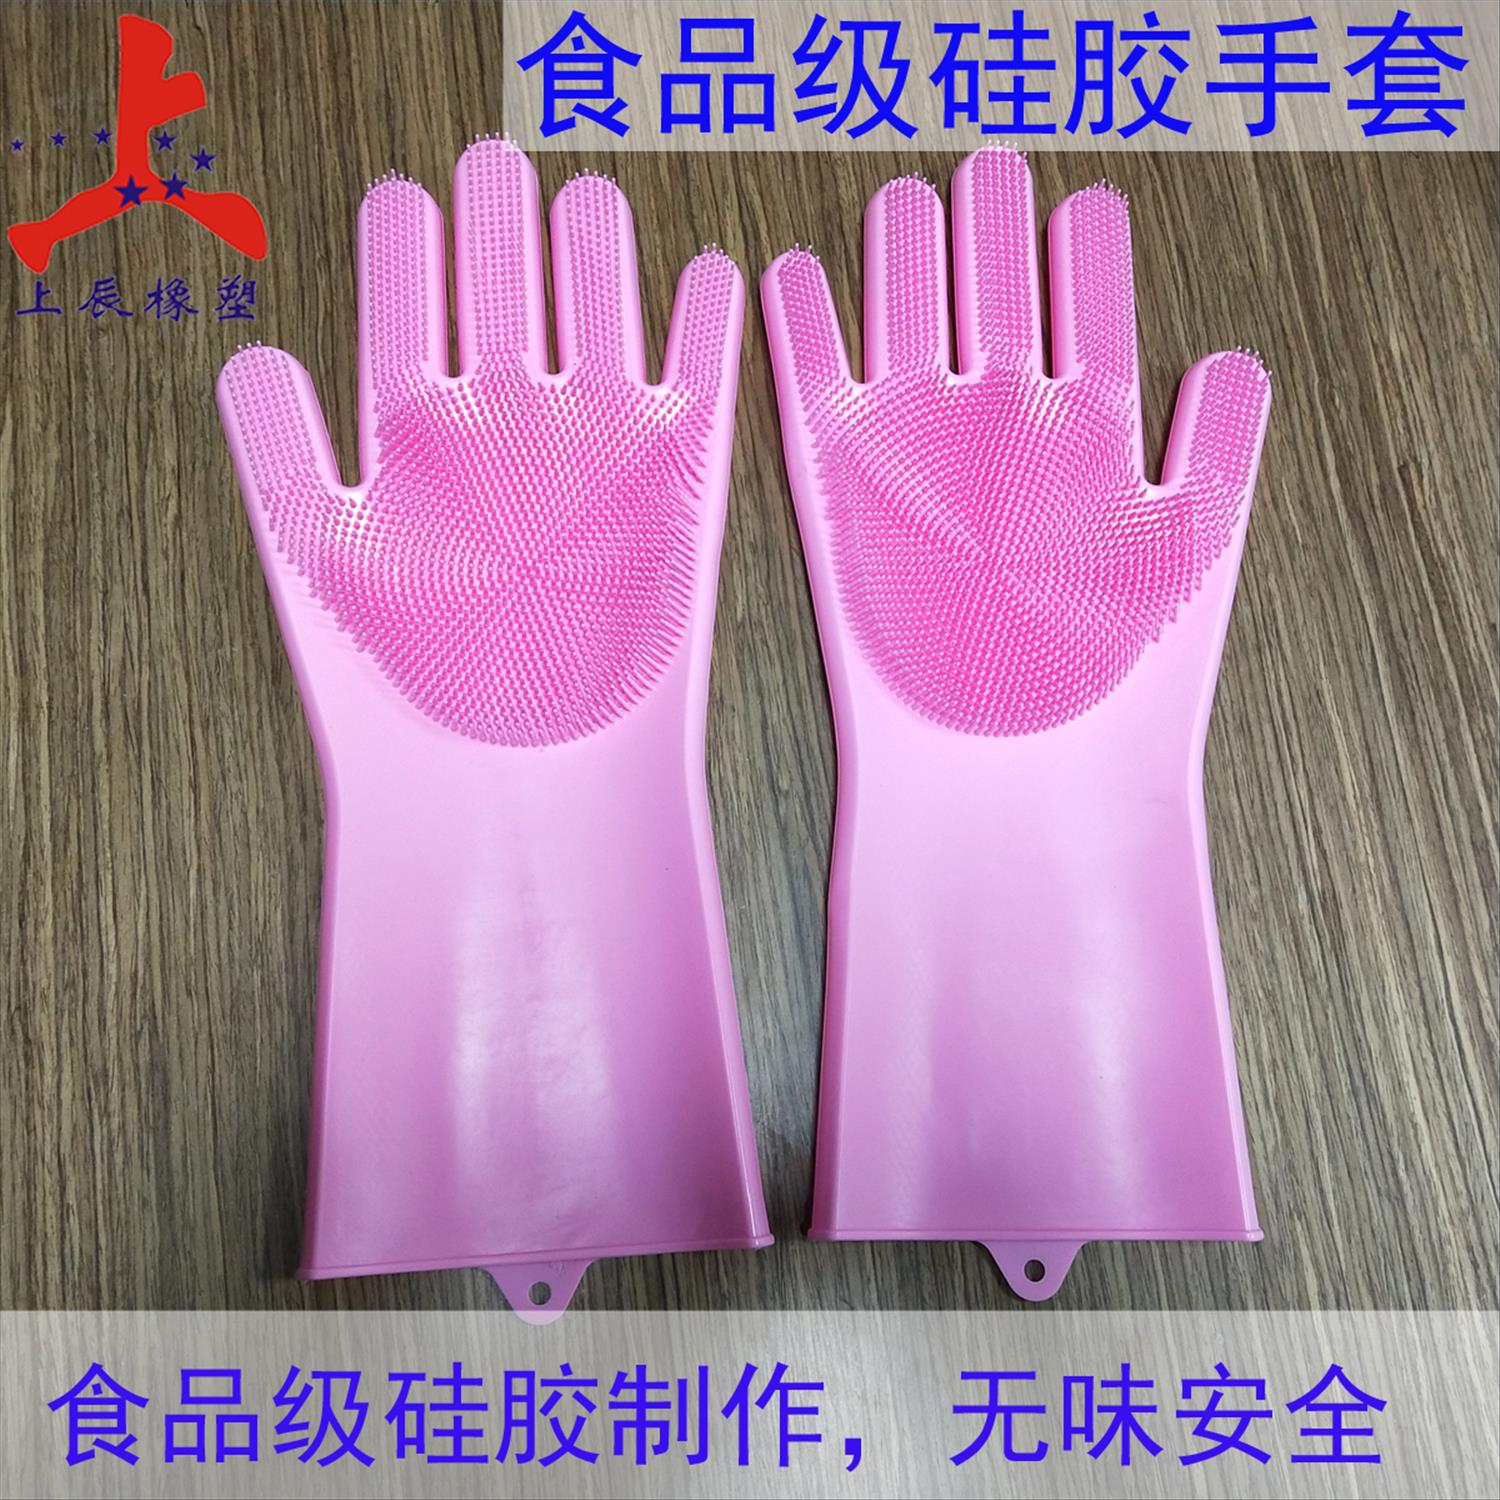 上辰深圳硅膠廠加工訂制硅膠洗碗手套